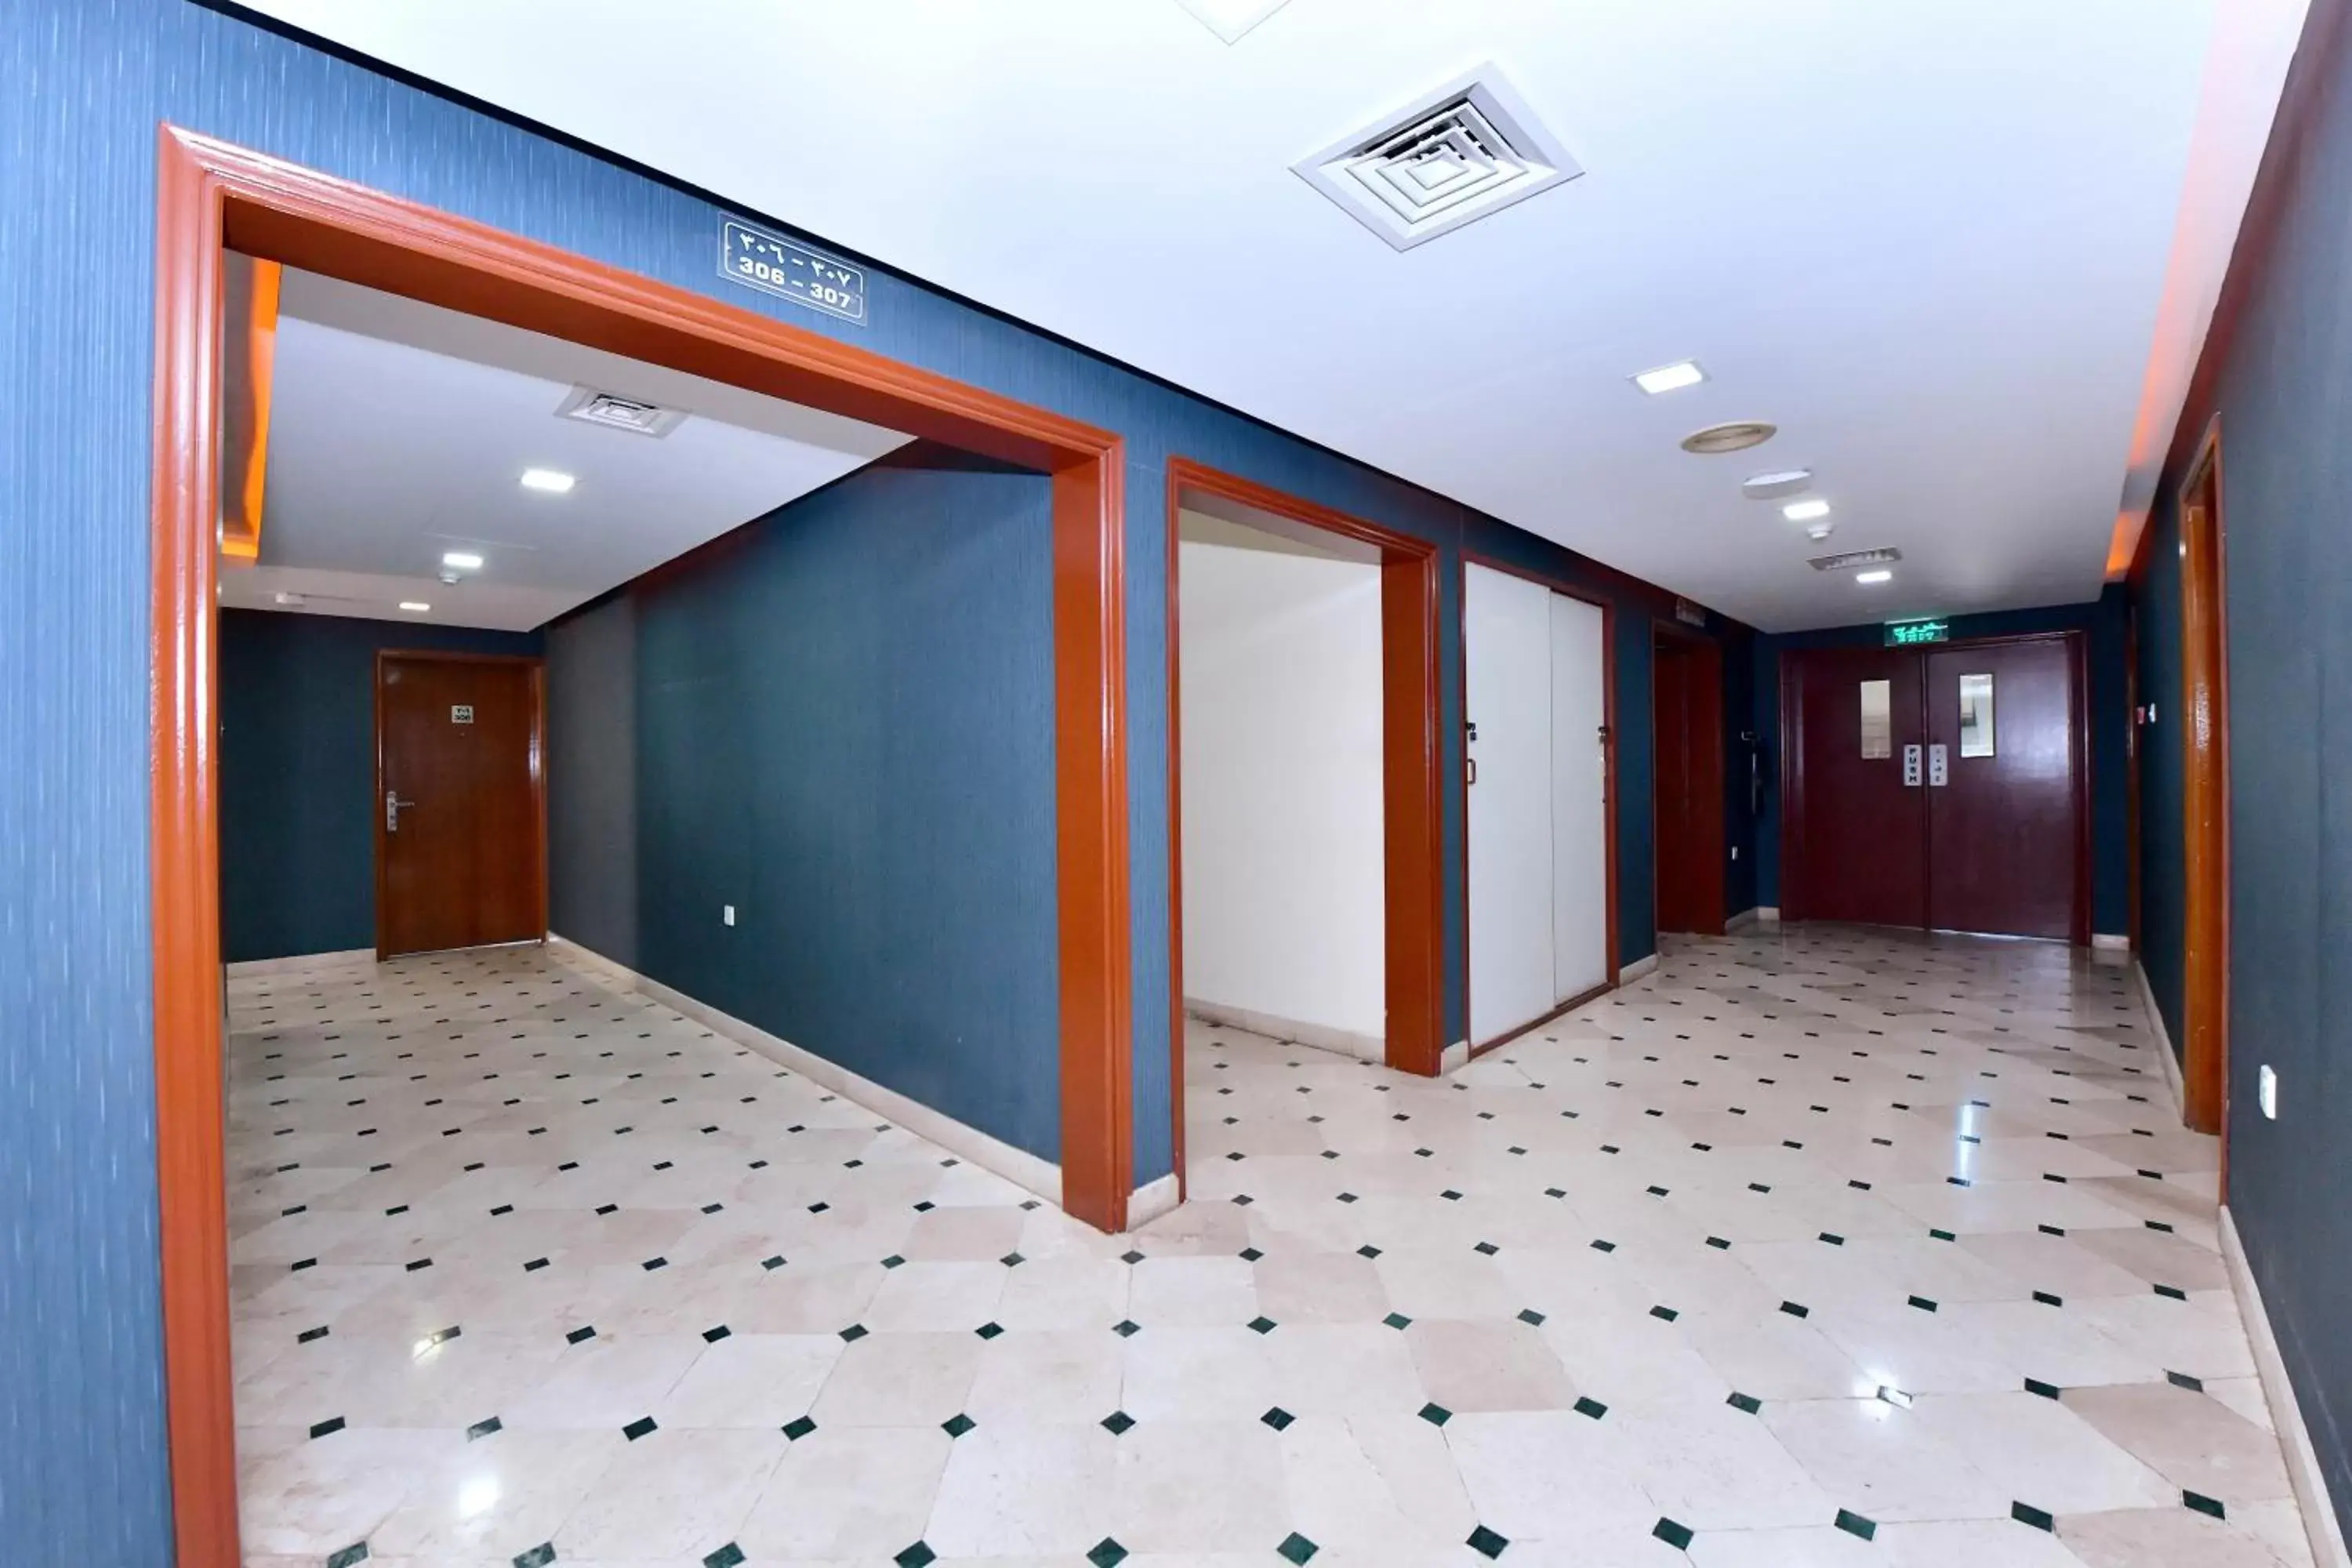 Lobby or reception in Al Bahjah Hotel